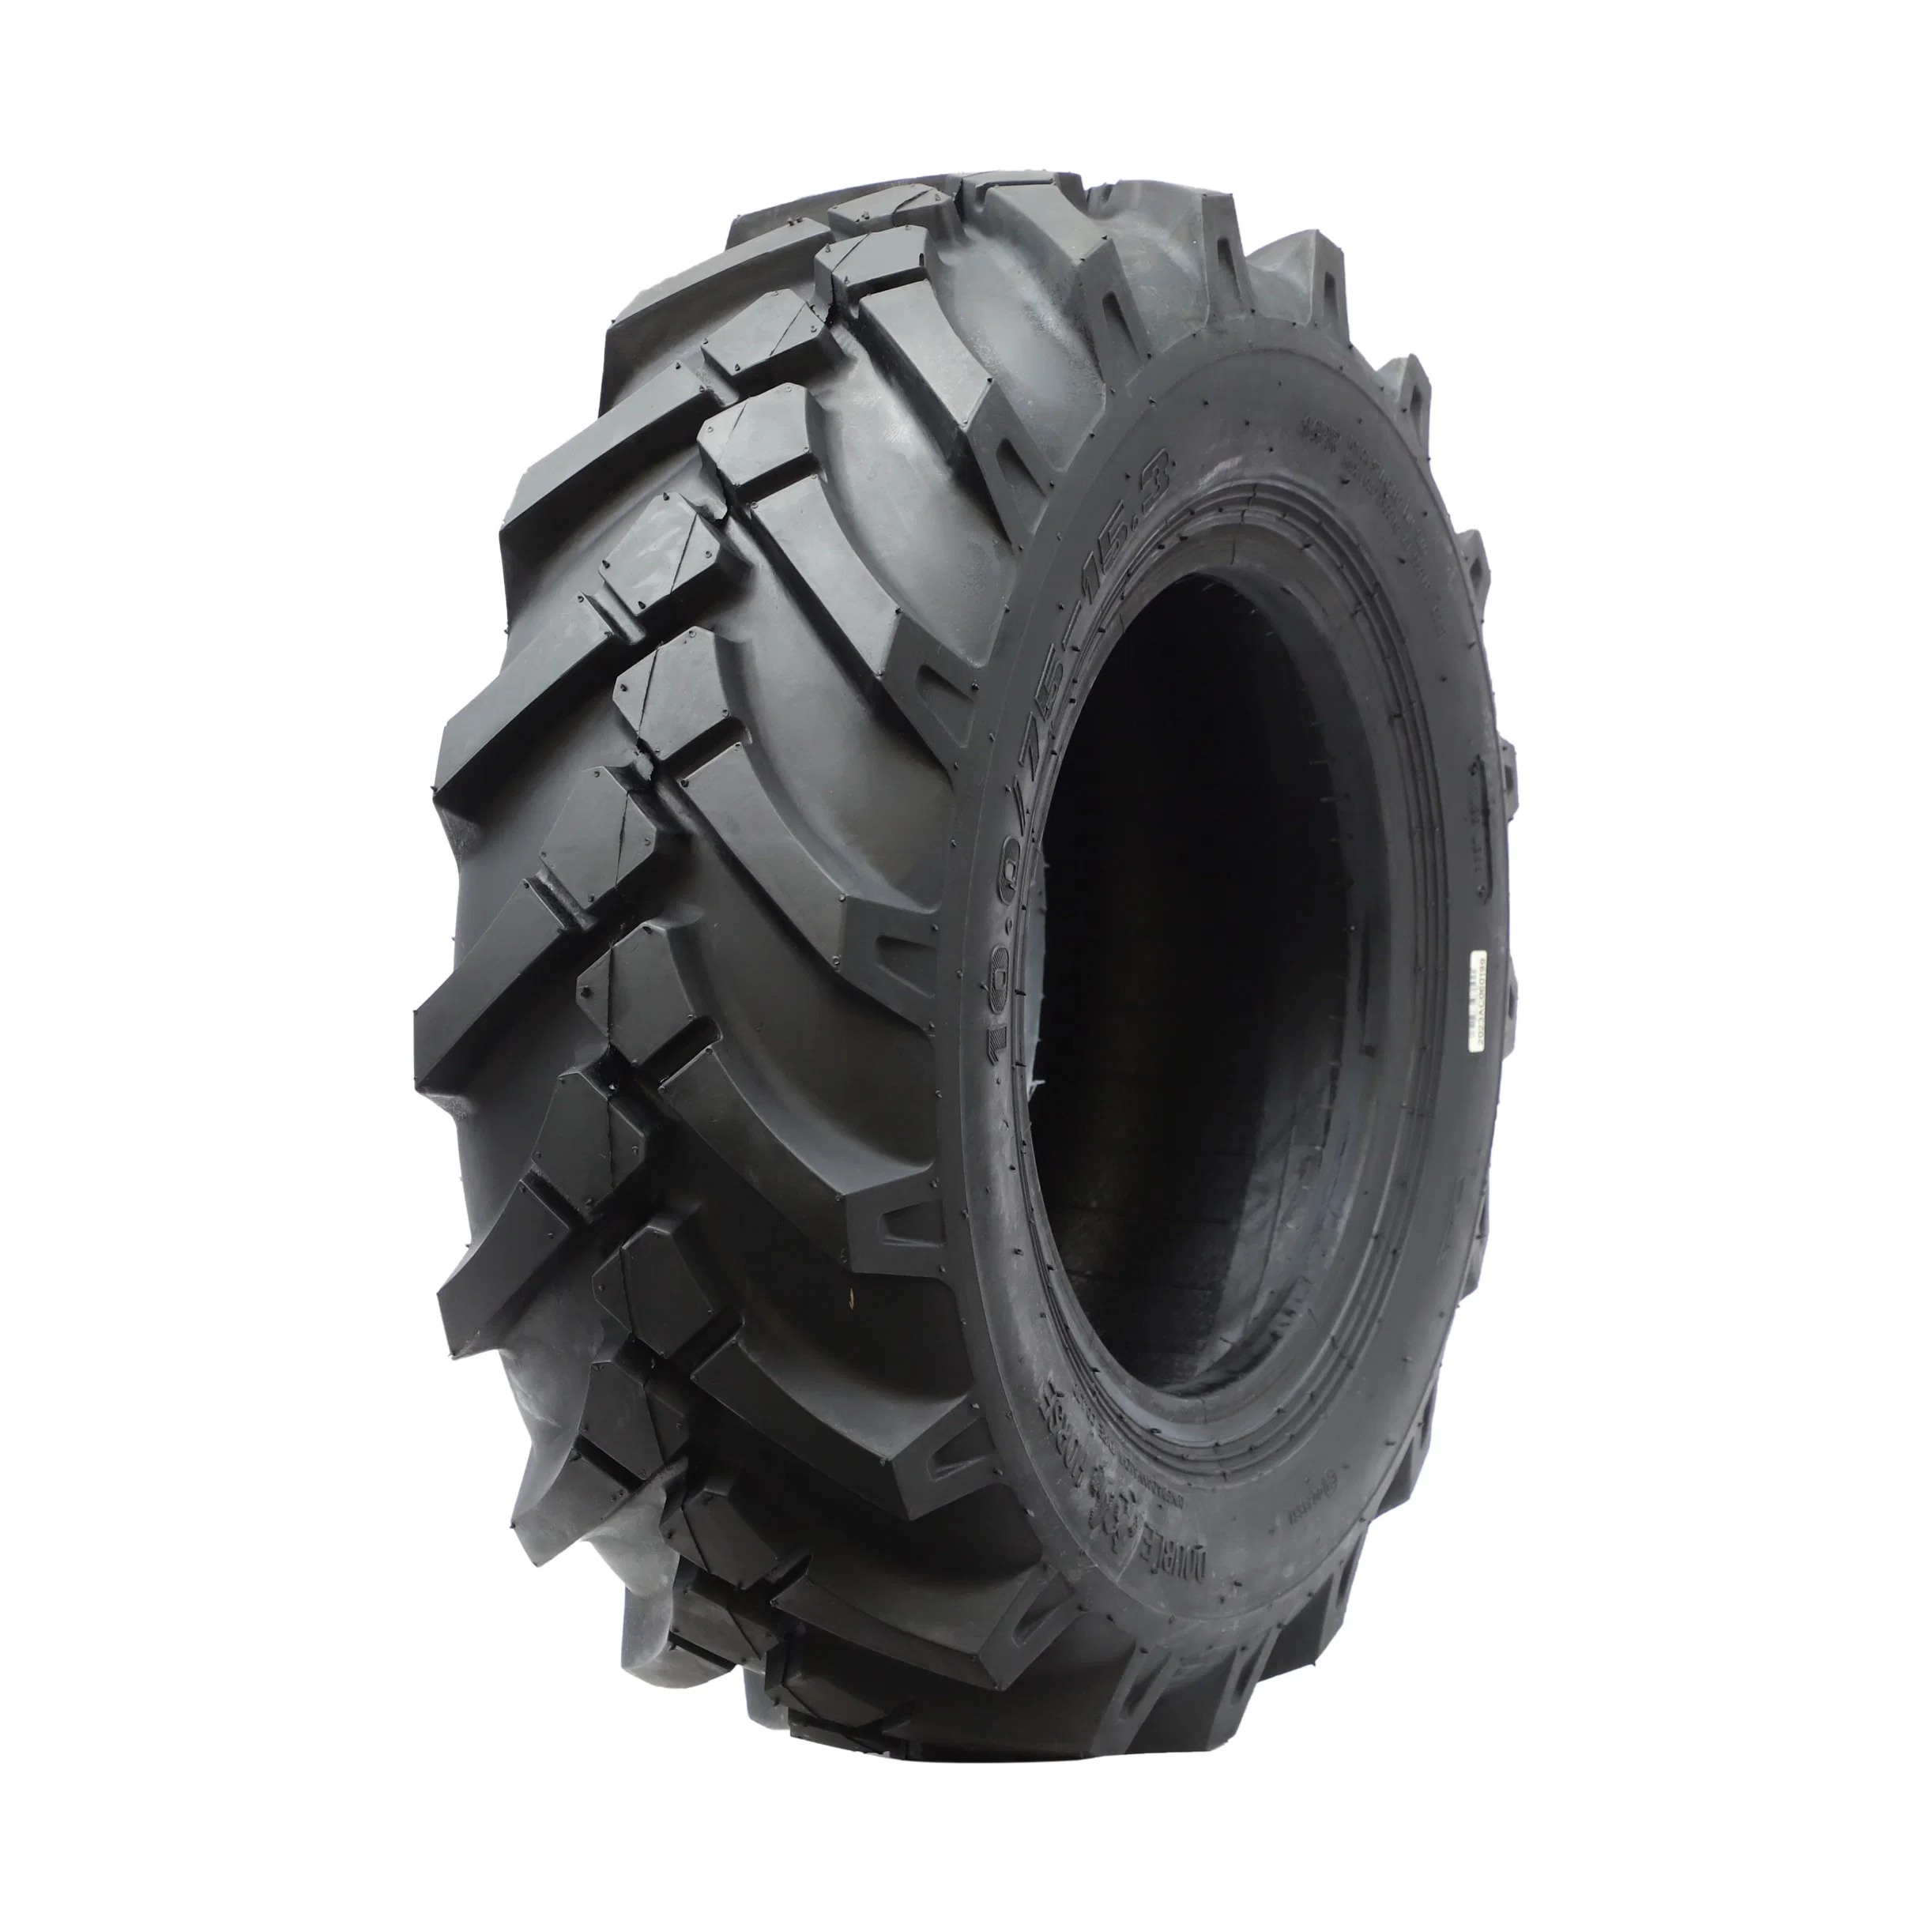 Rim9*15,3 A669 10,0/75-15,3 Construcción de neumáticos Inudstrial Tyre Tire OTR Mine Tyer ATV neumático de maquinaria neumático neumático especial neumático